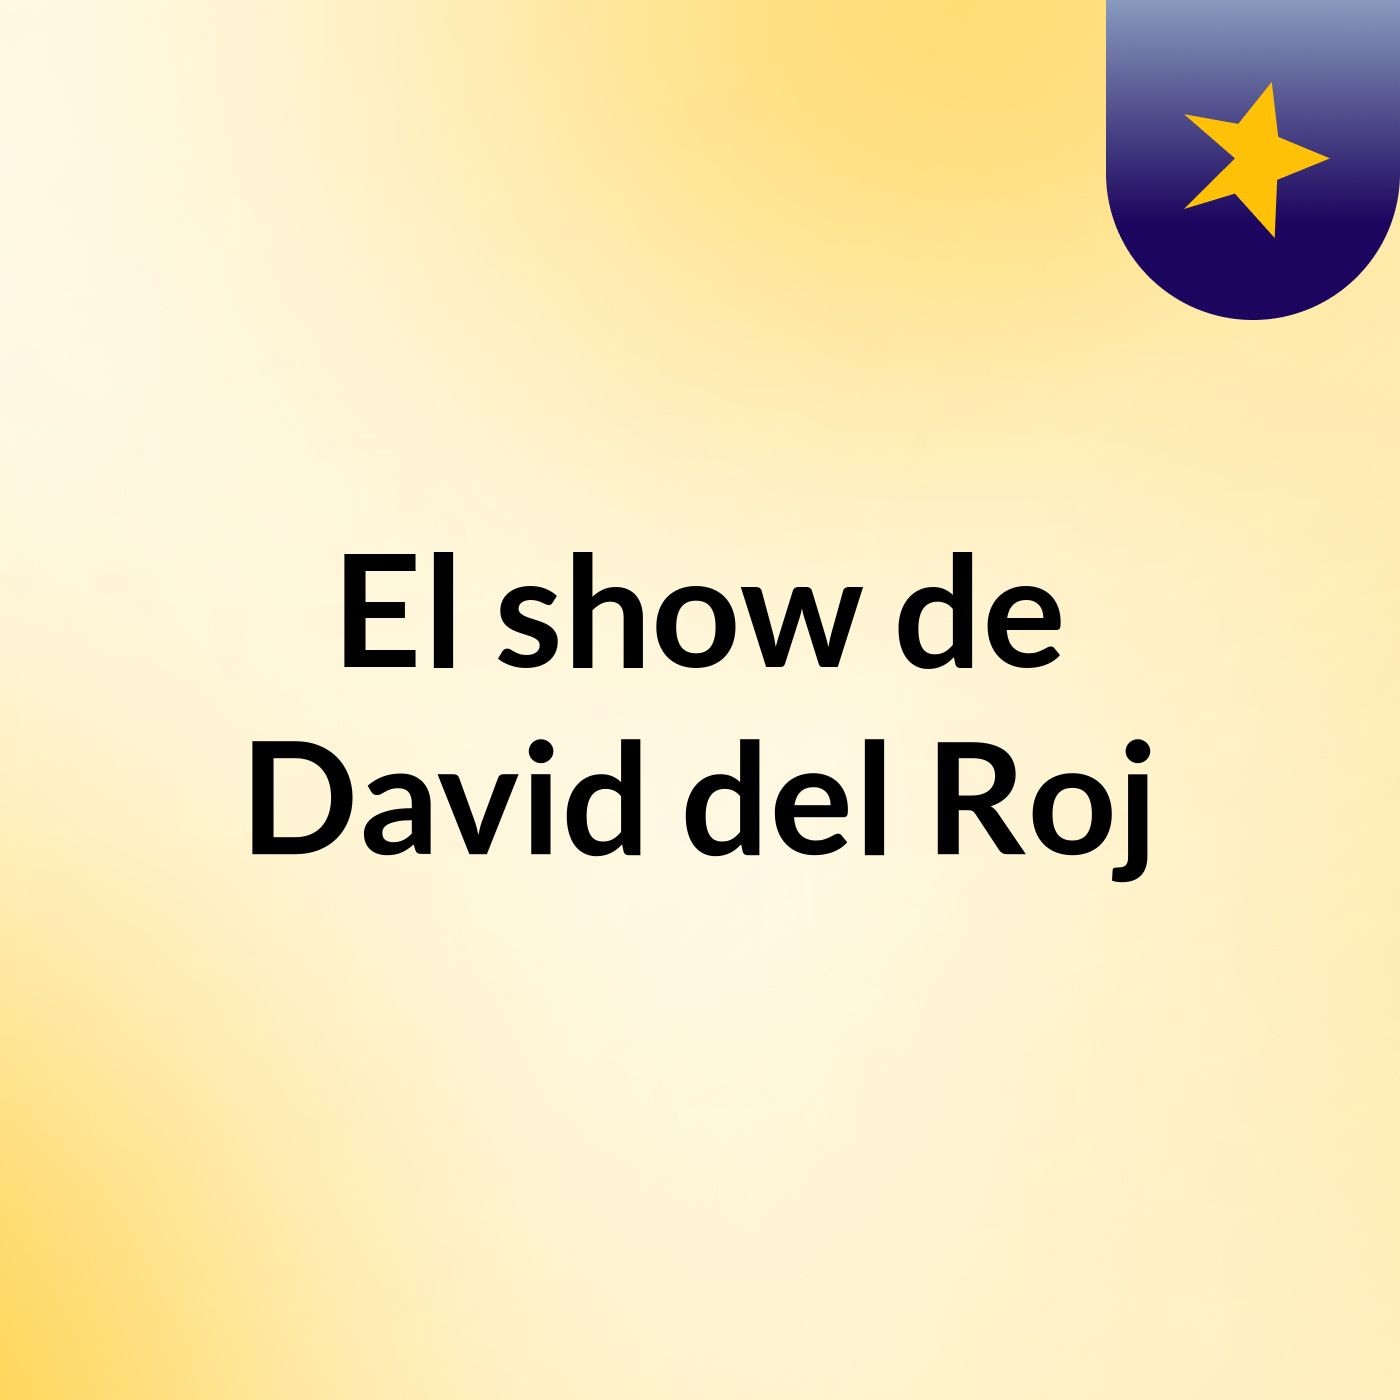 El show de David del Roj:David del Roj